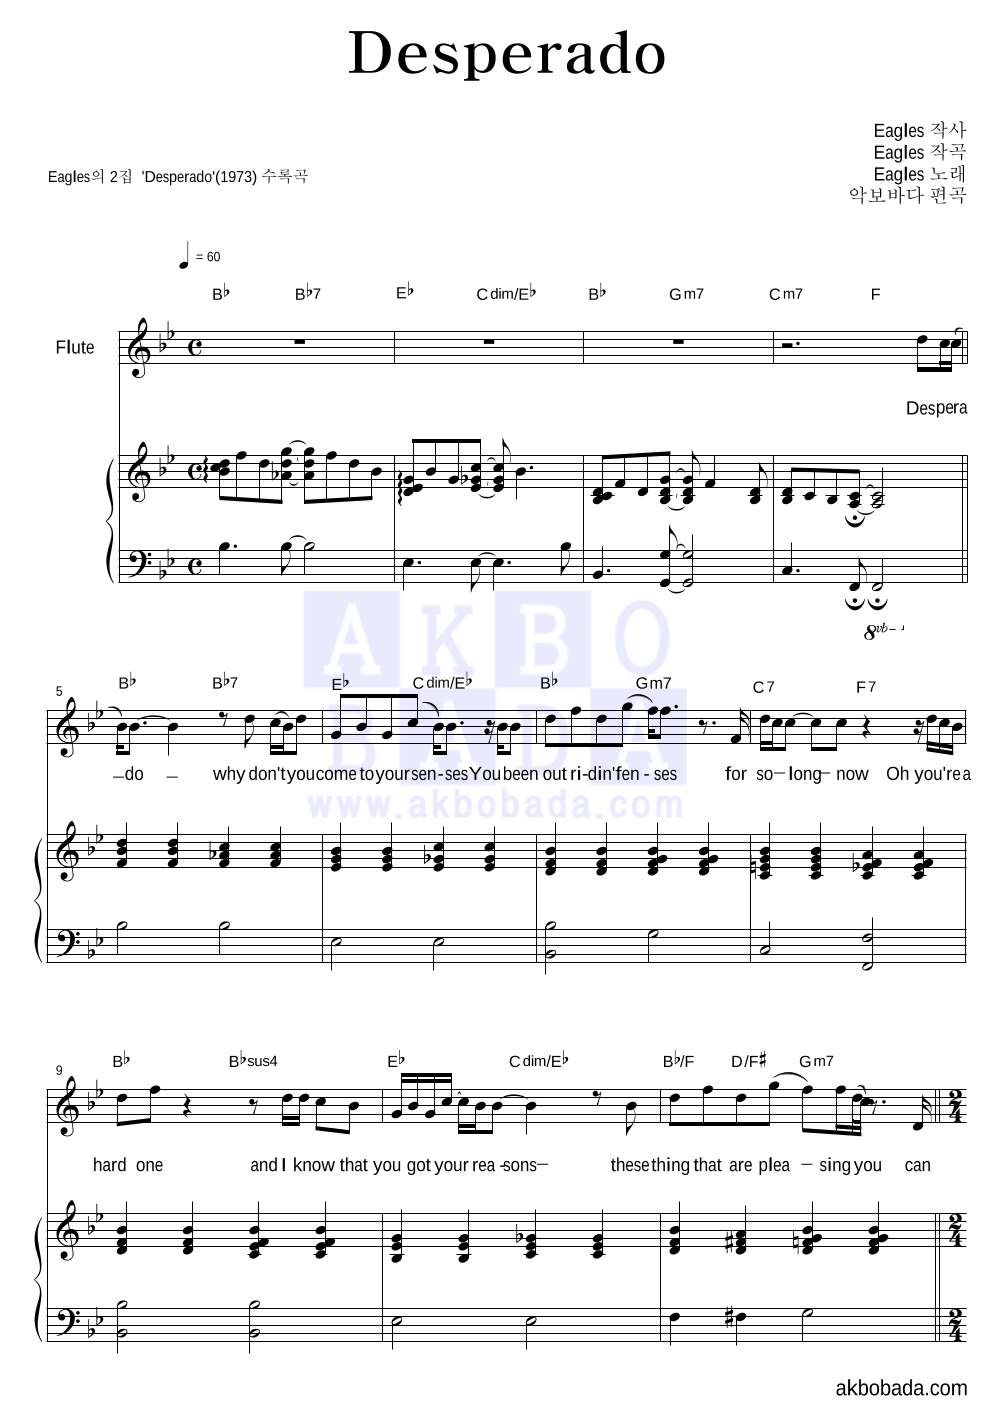 Eagles - Desperado 플룻&피아노 악보 